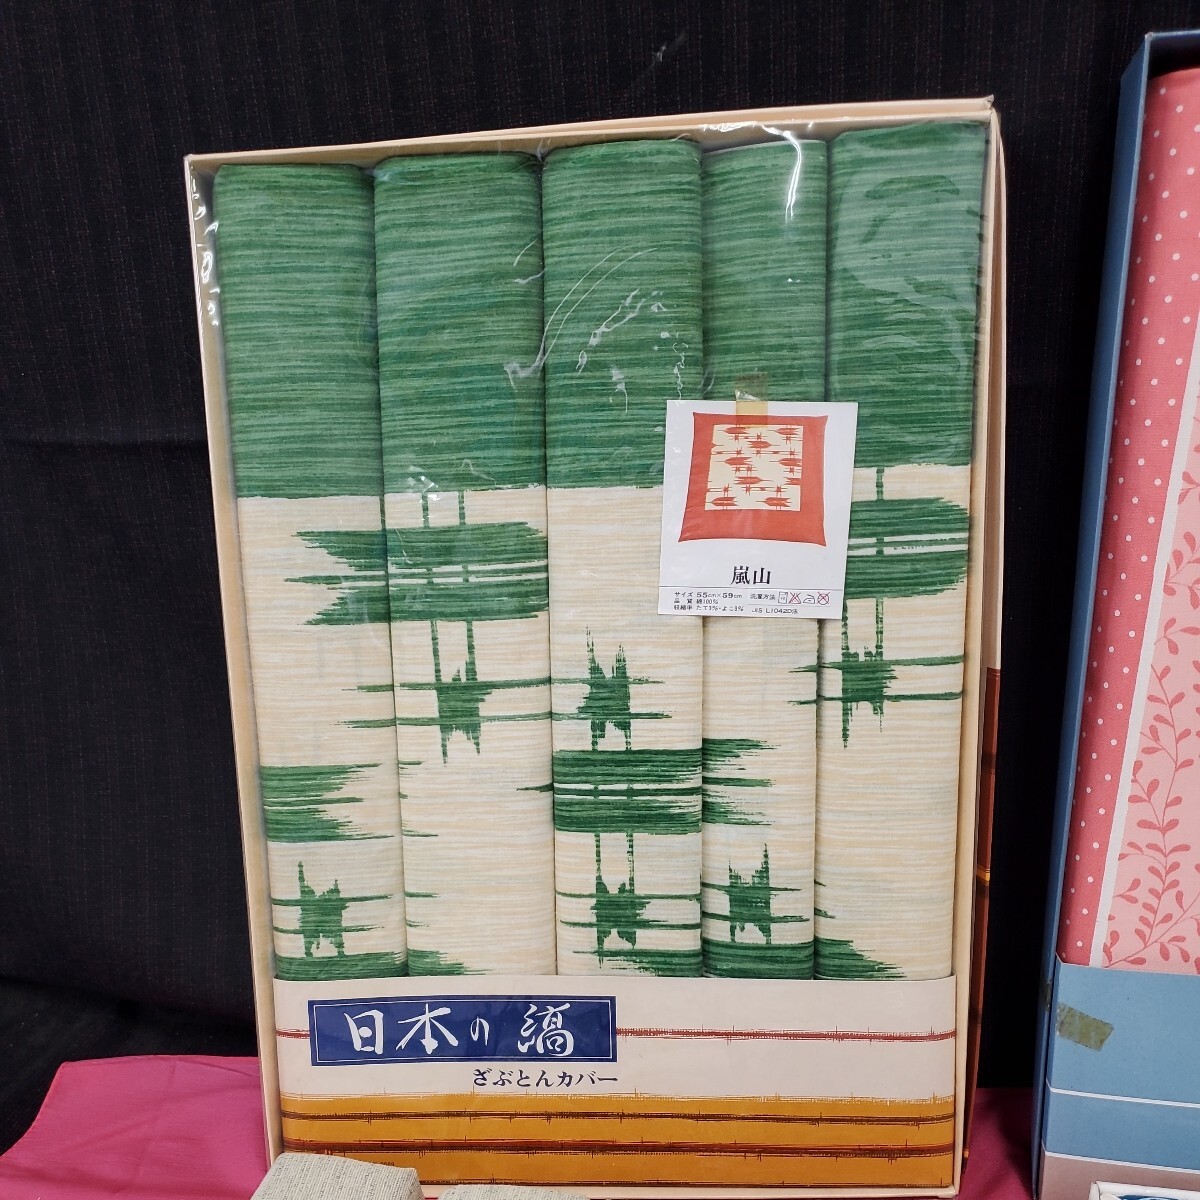 * не использовался хранение товар чехол на подушку для сидения продажа комплектом 55cm×59cmrofte- Kyoto гроза гора .... покрытие 4 сезон ...156-91